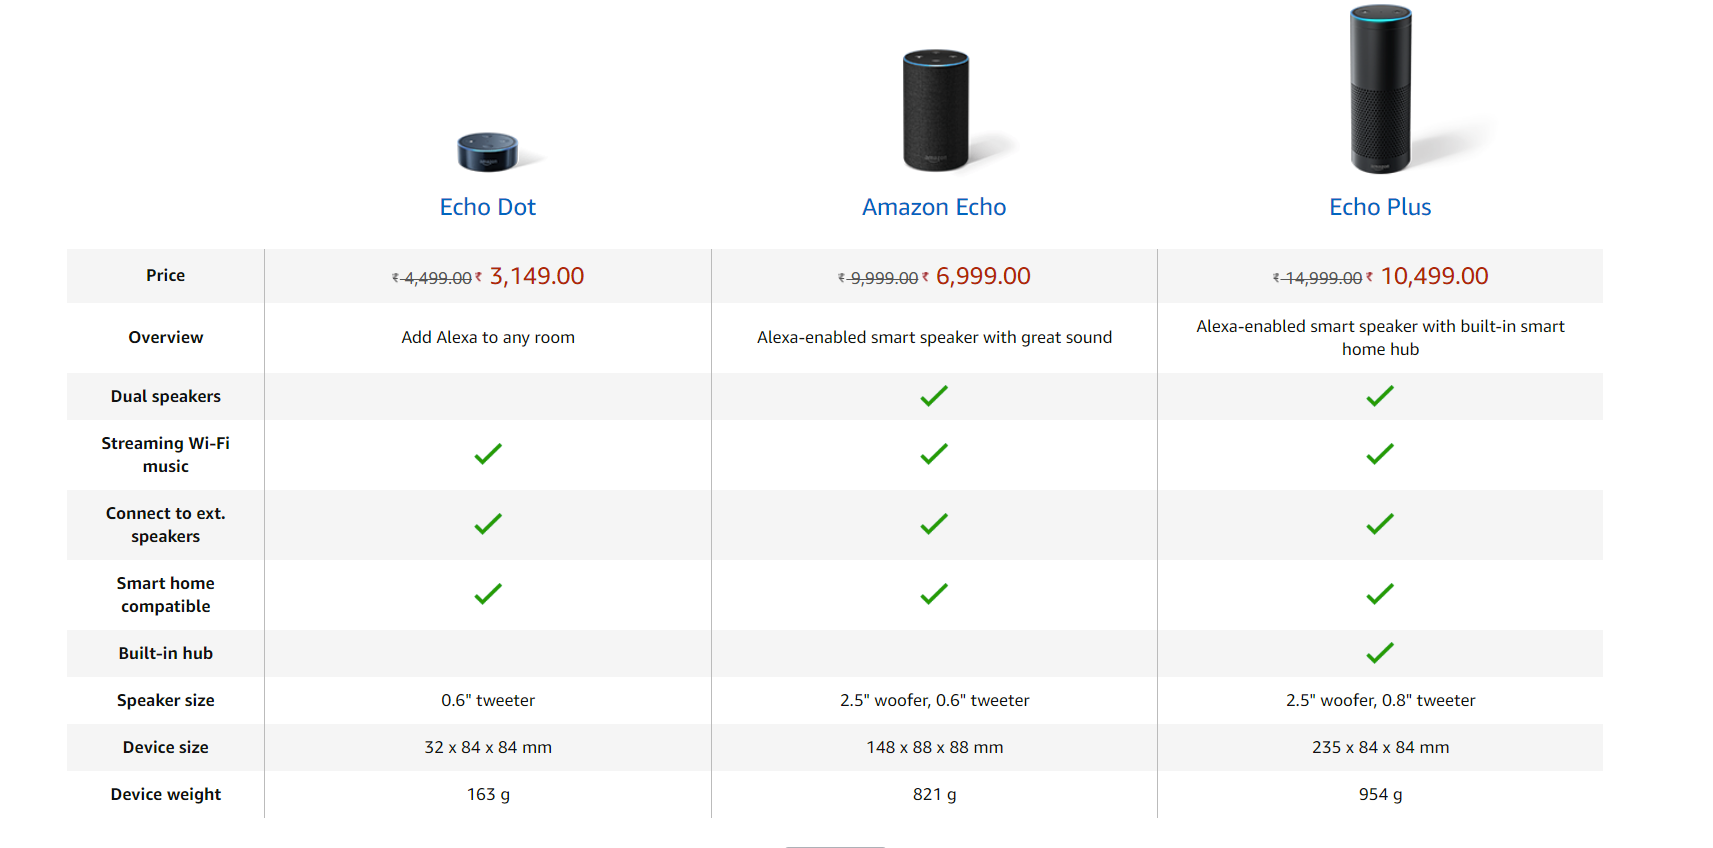 Amazon Echo Vs Echo Dot vs Echo Plus